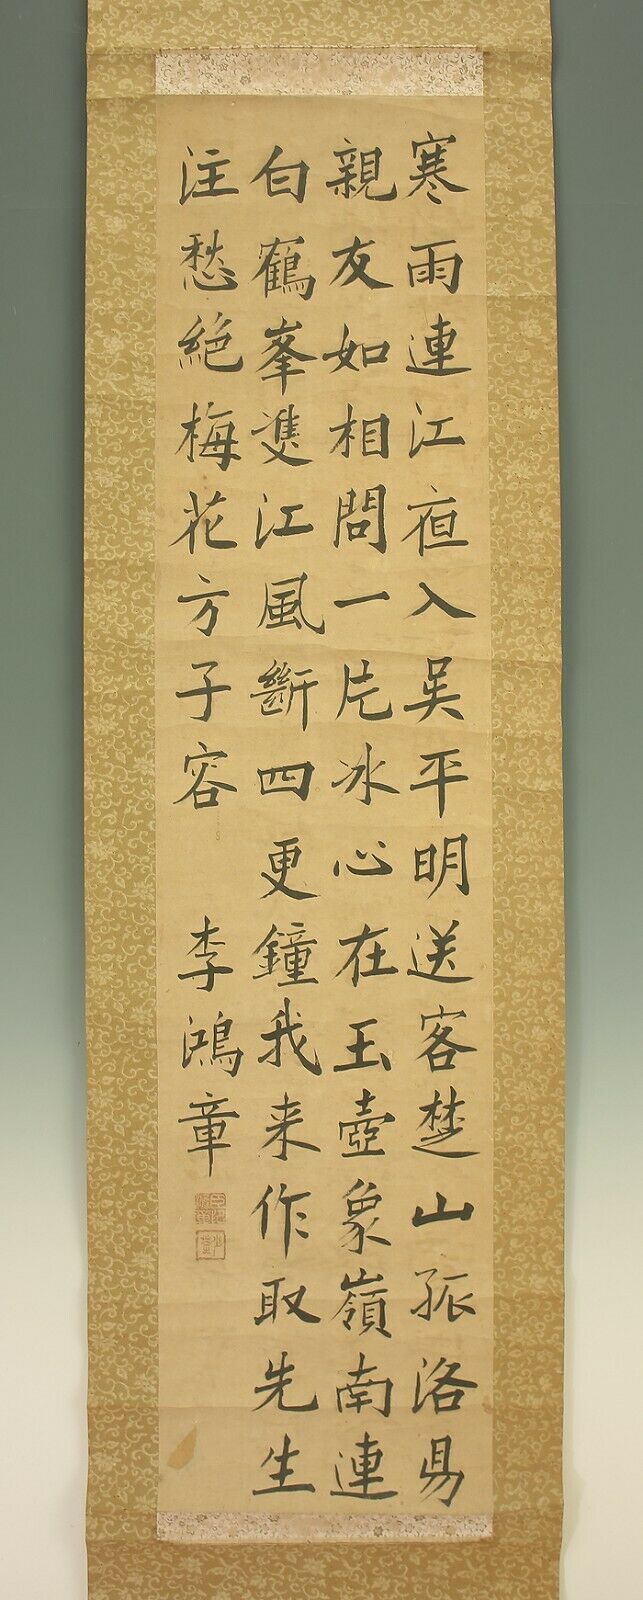 掛軸1967 Chinese Hanging Scroll "calligraphy"  @e224